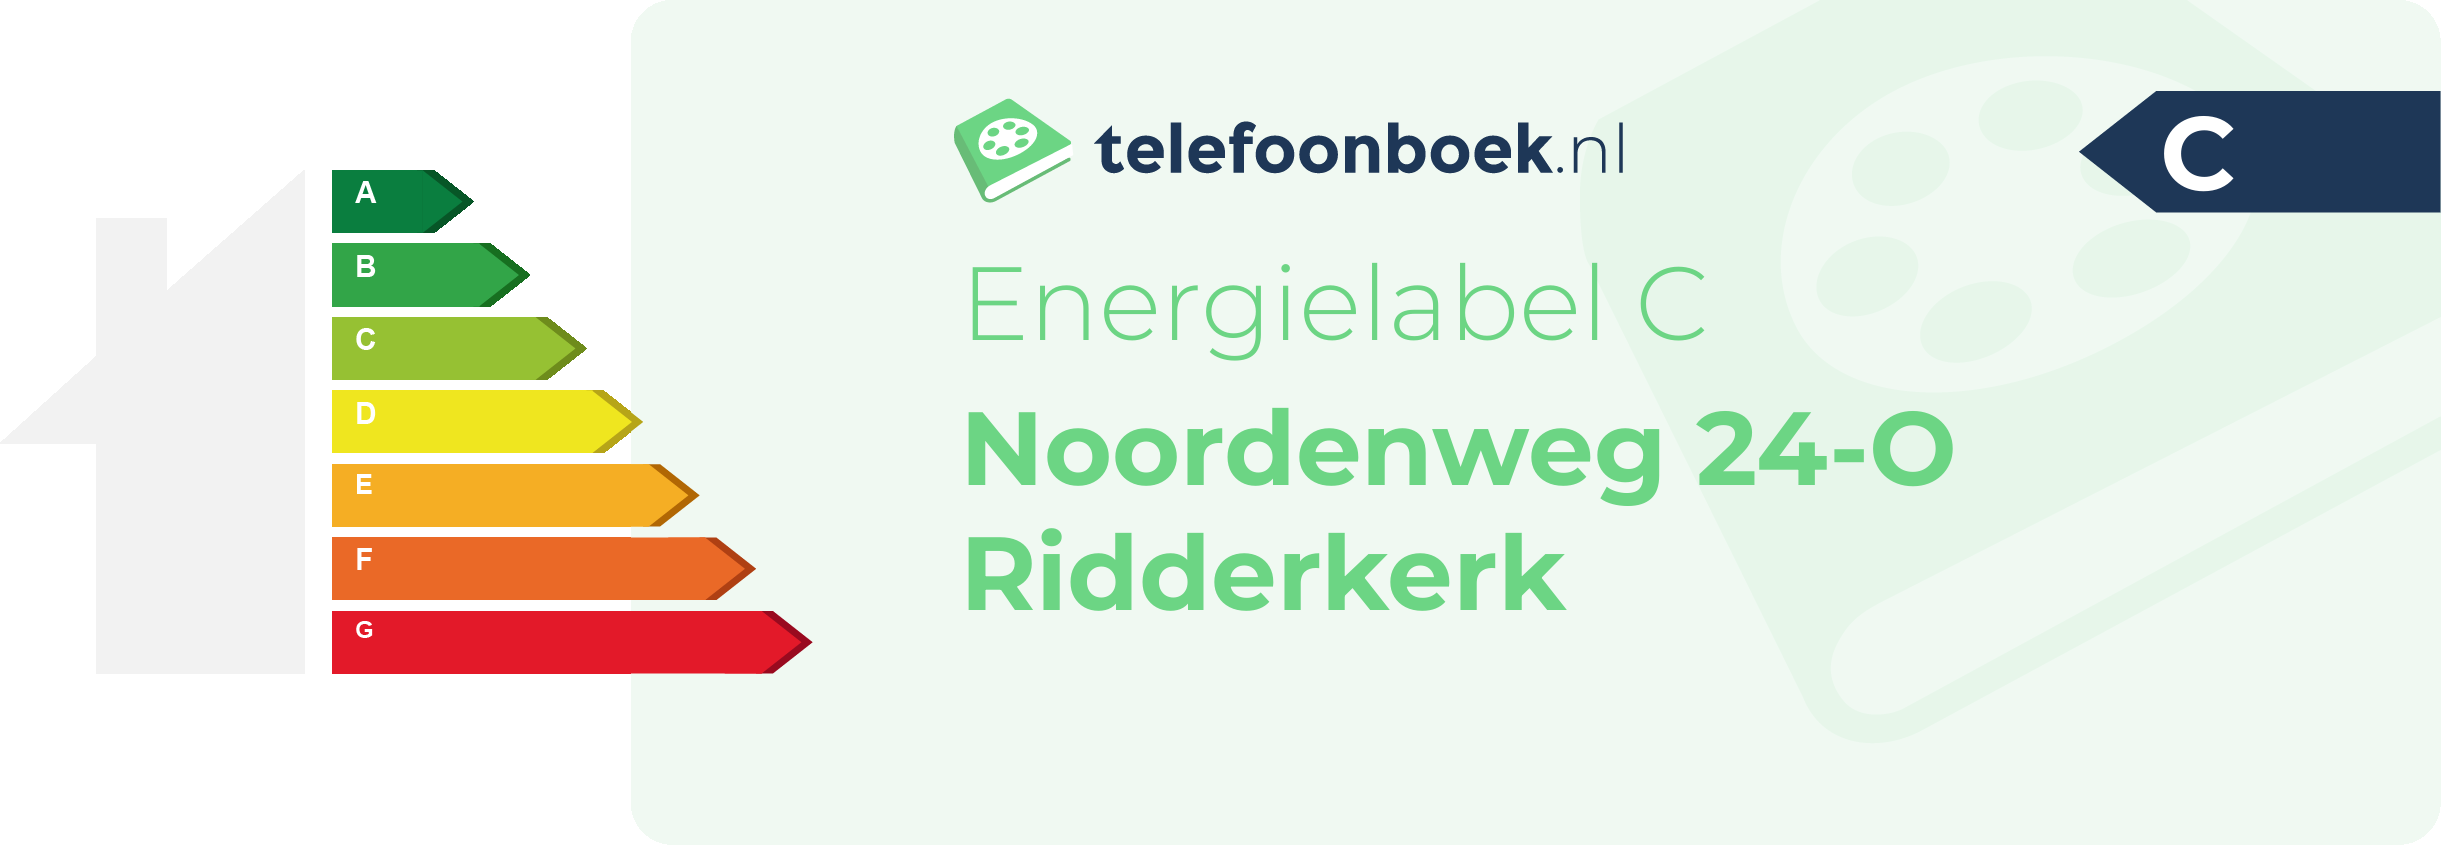 Energielabel Noordenweg 24-O Ridderkerk